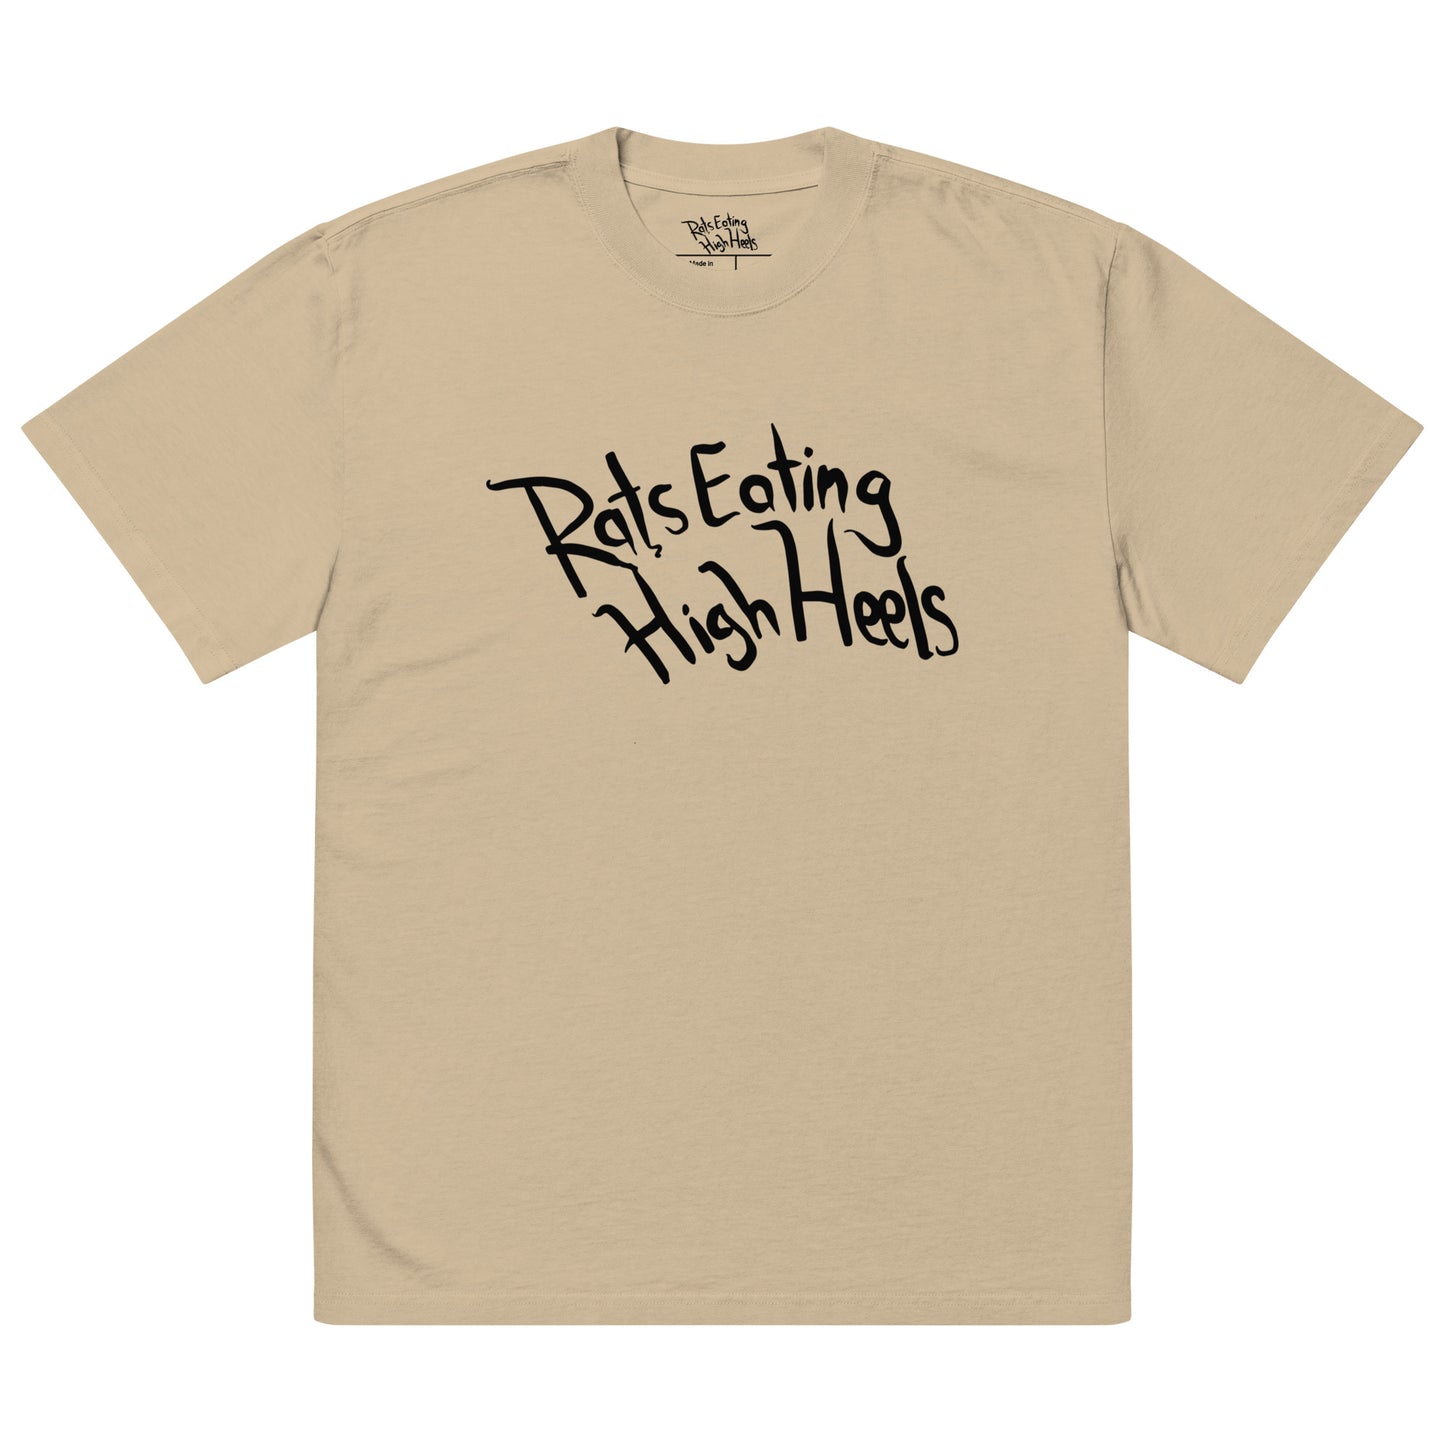 REHH - Oversized faded t-shirt (Khaki)